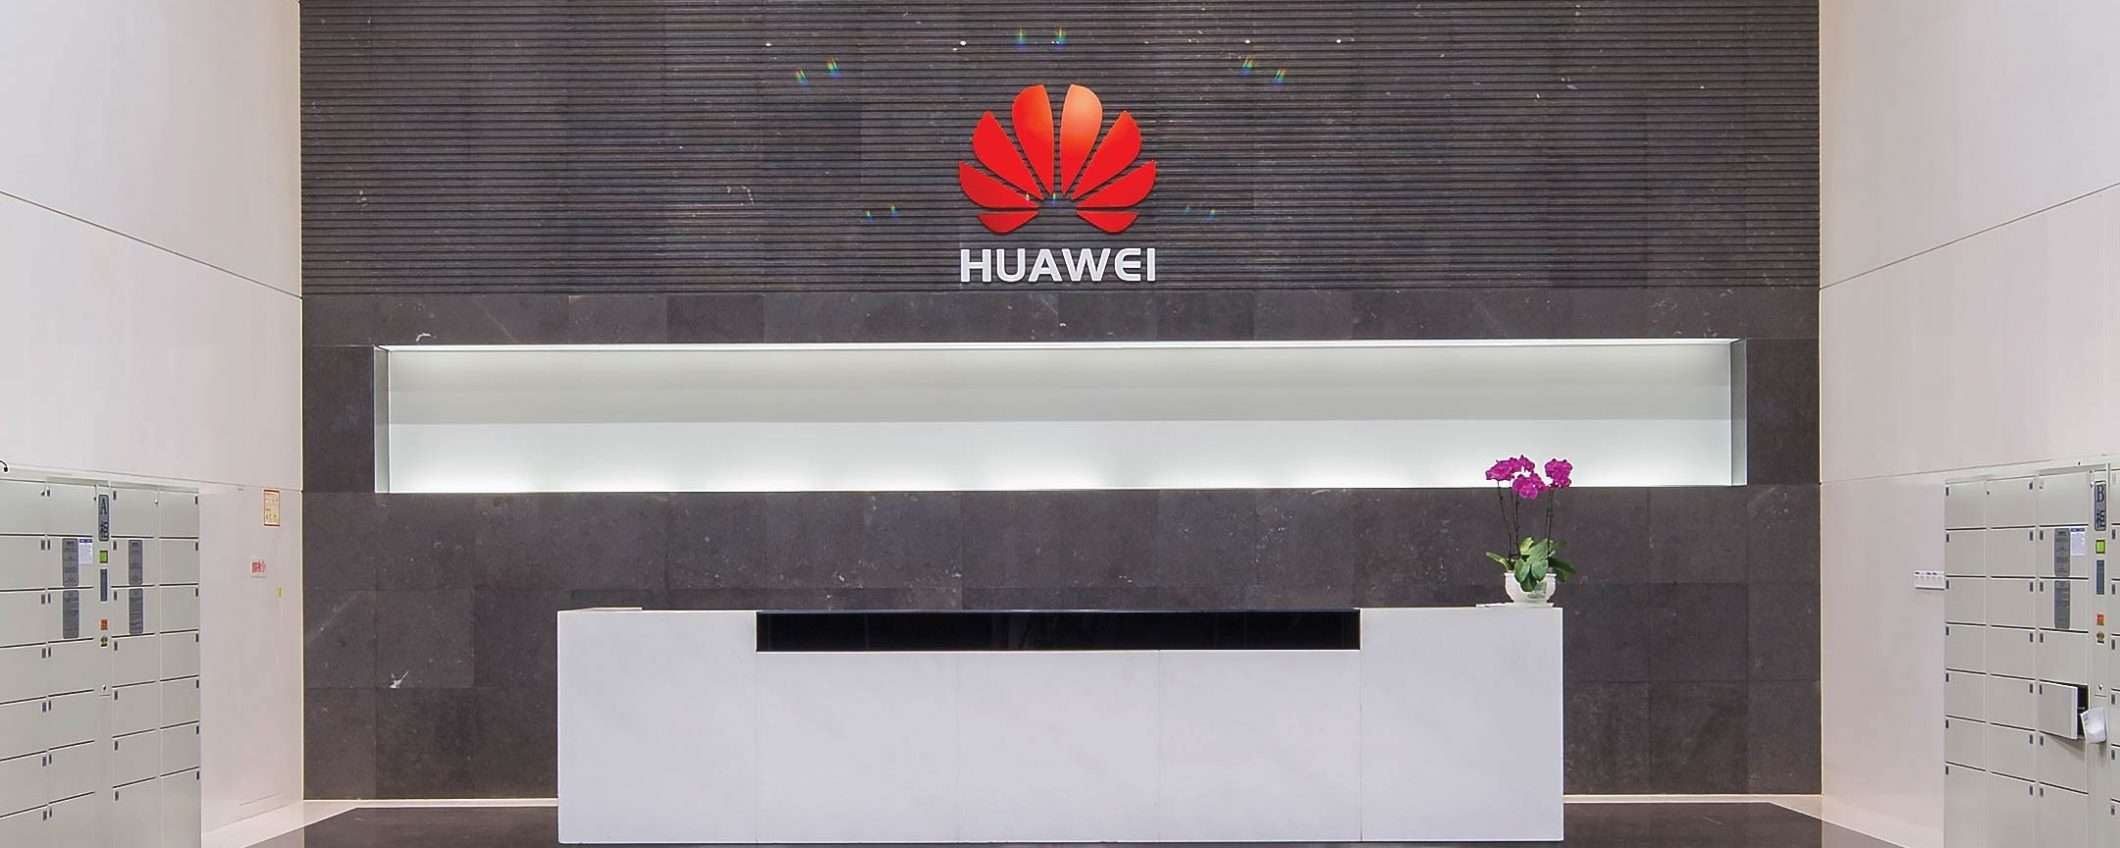 Il sostegno della Cina al business di Huawei